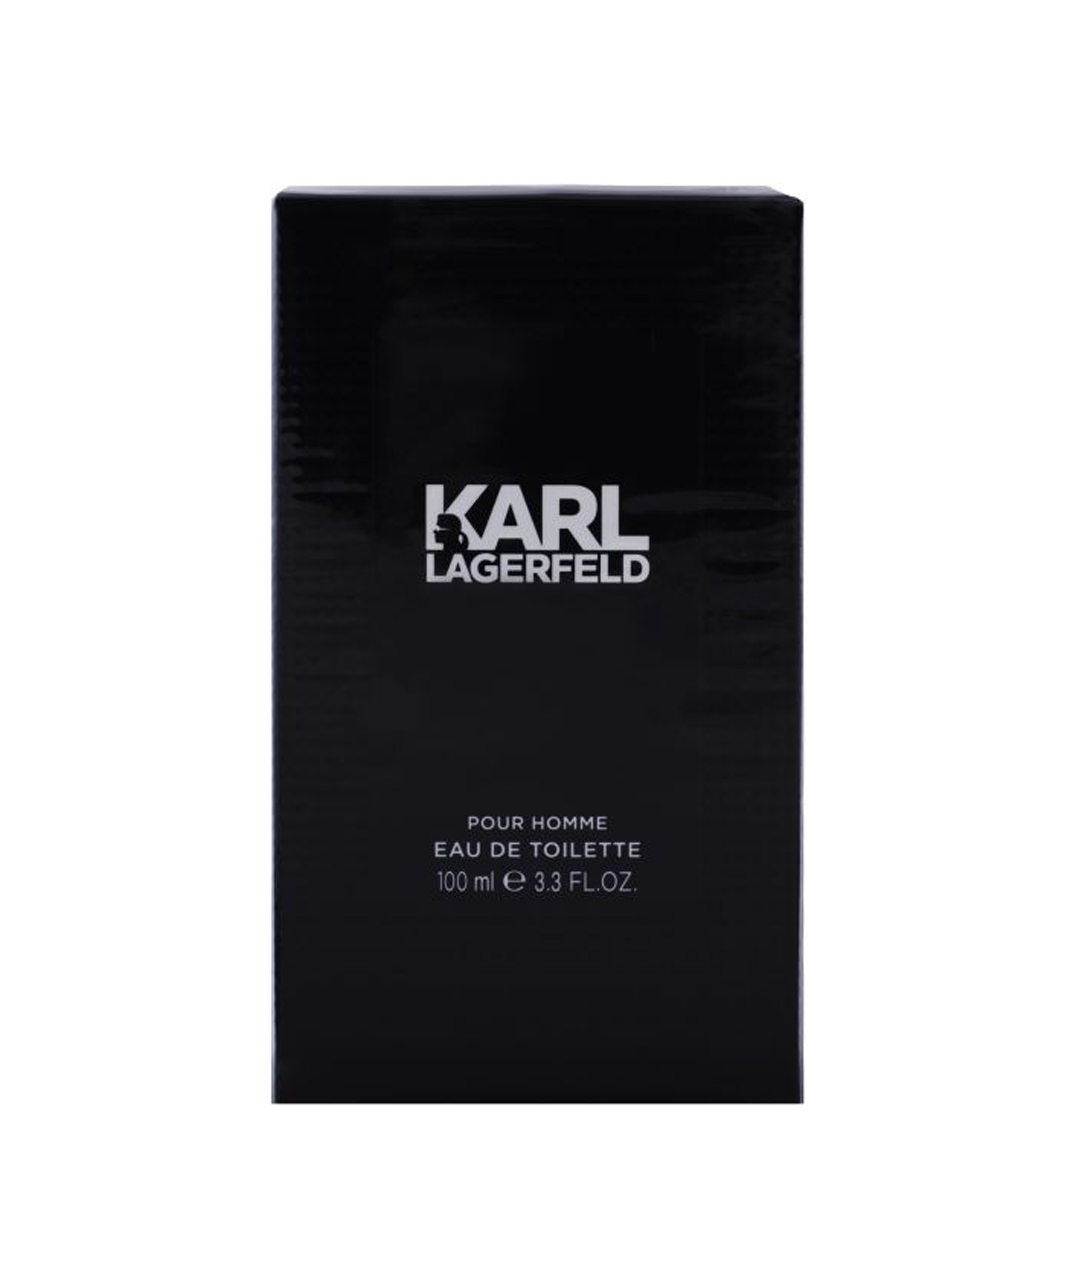 Perfume «Karl Lagerfeld» for men, 100 ml